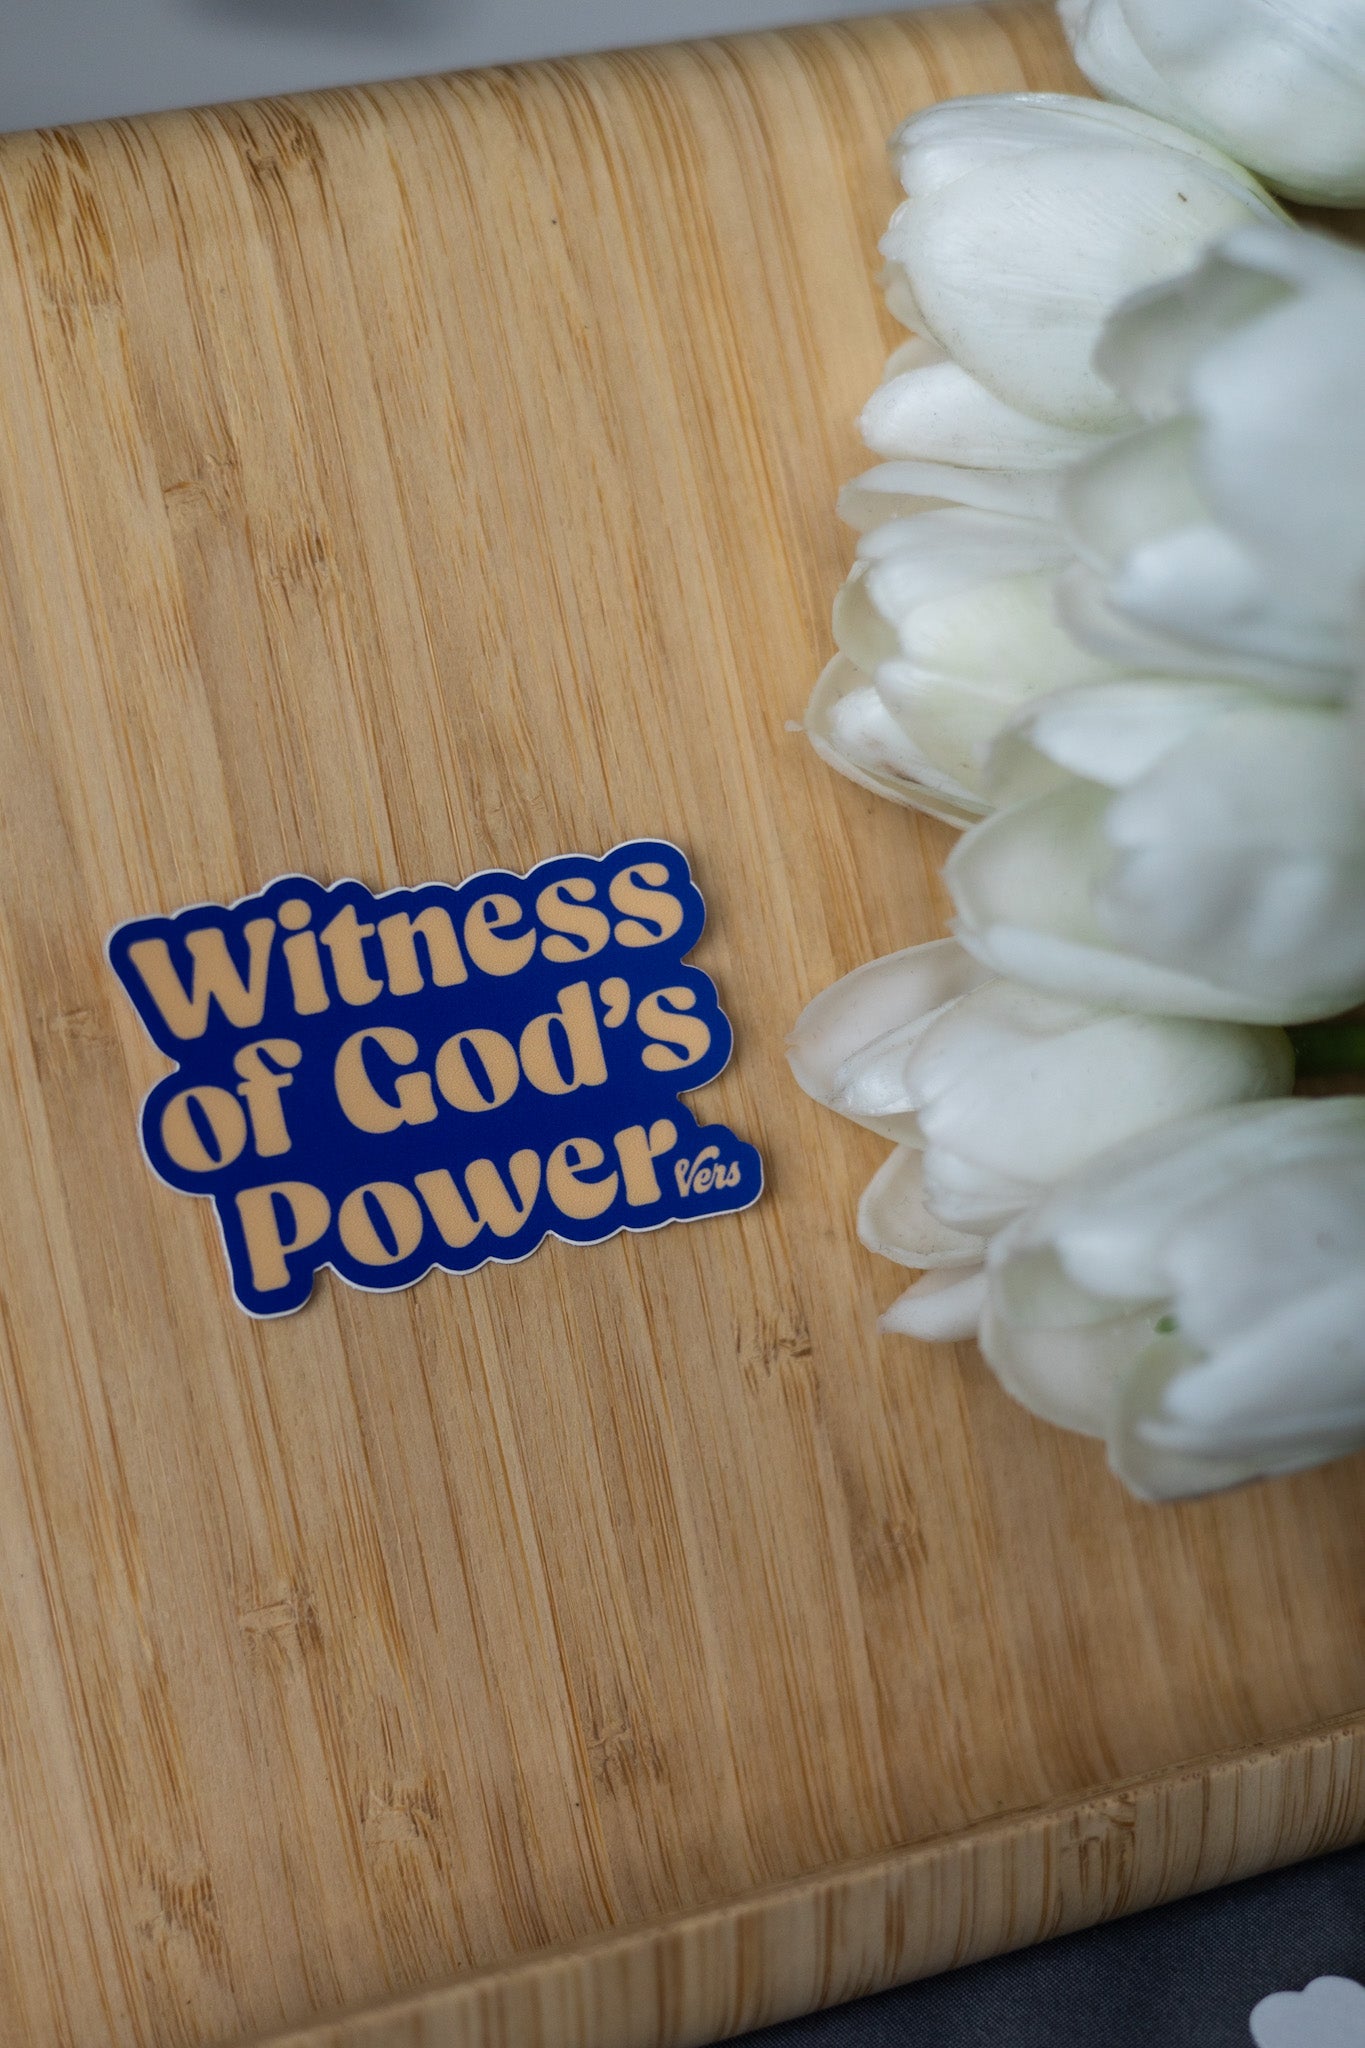 Witness Of God's Power Sticker